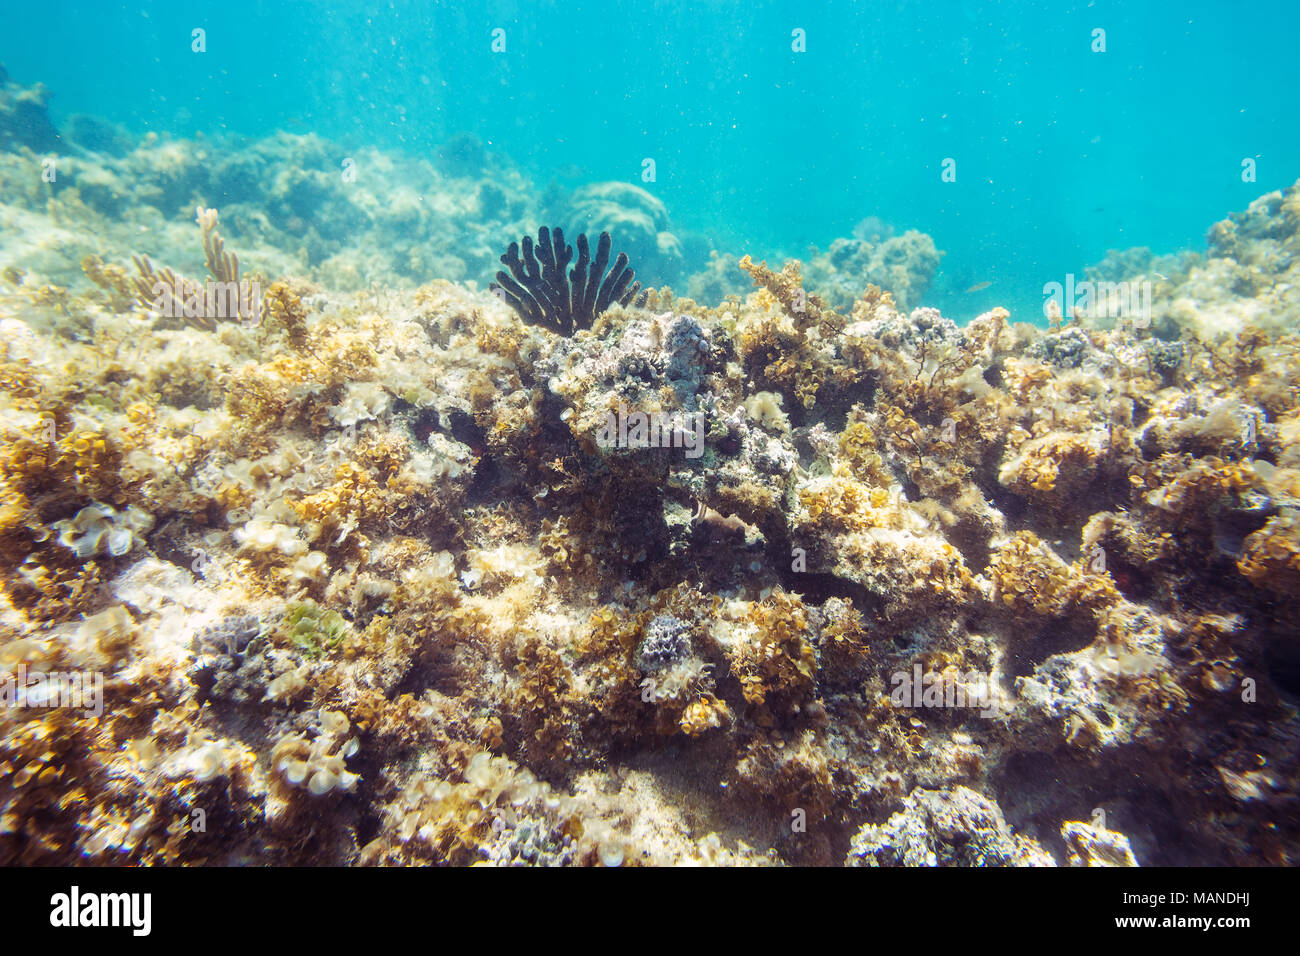 Arrecifes de coral submarinos, los fondos marinos con vista horizonte dividido por la superficie del agua y la línea de flotación Foto de stock